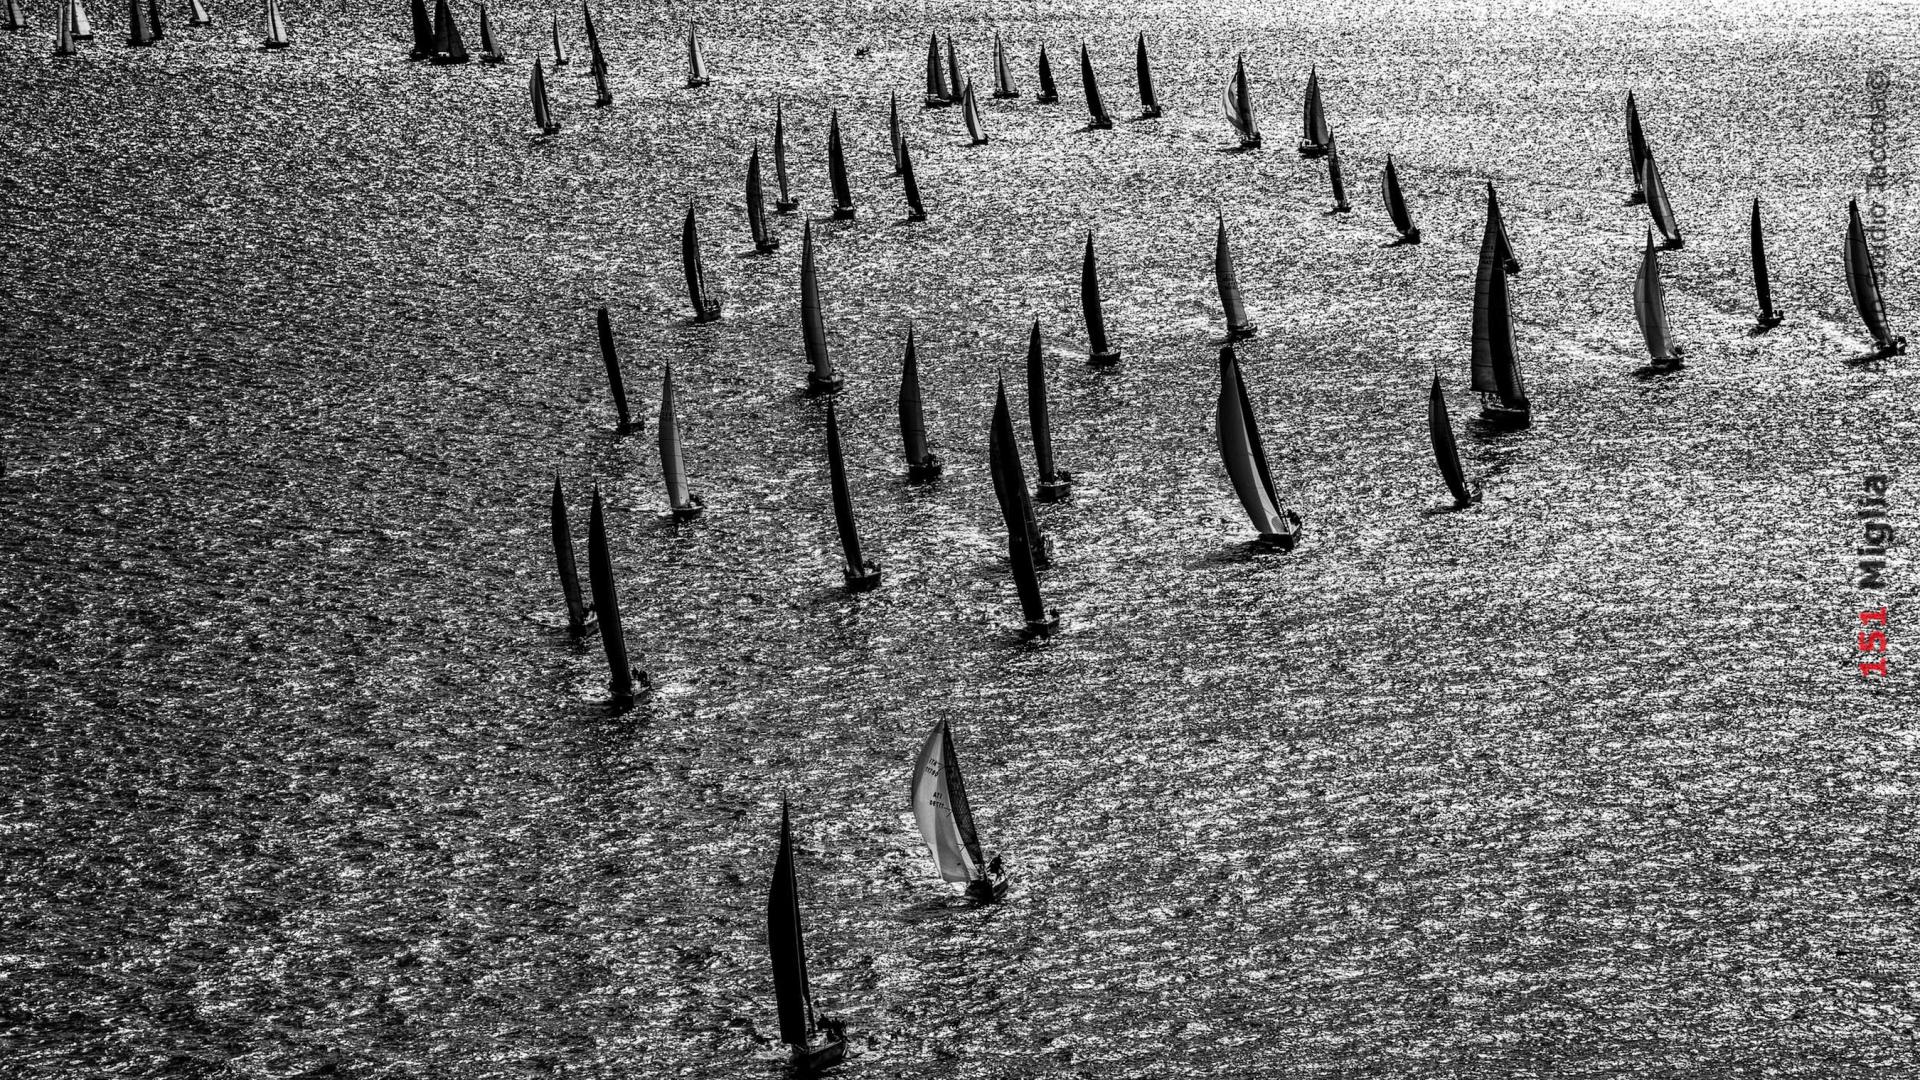 250 le barche attese alla 151 Miglia-Trofeo Cetilar 2021